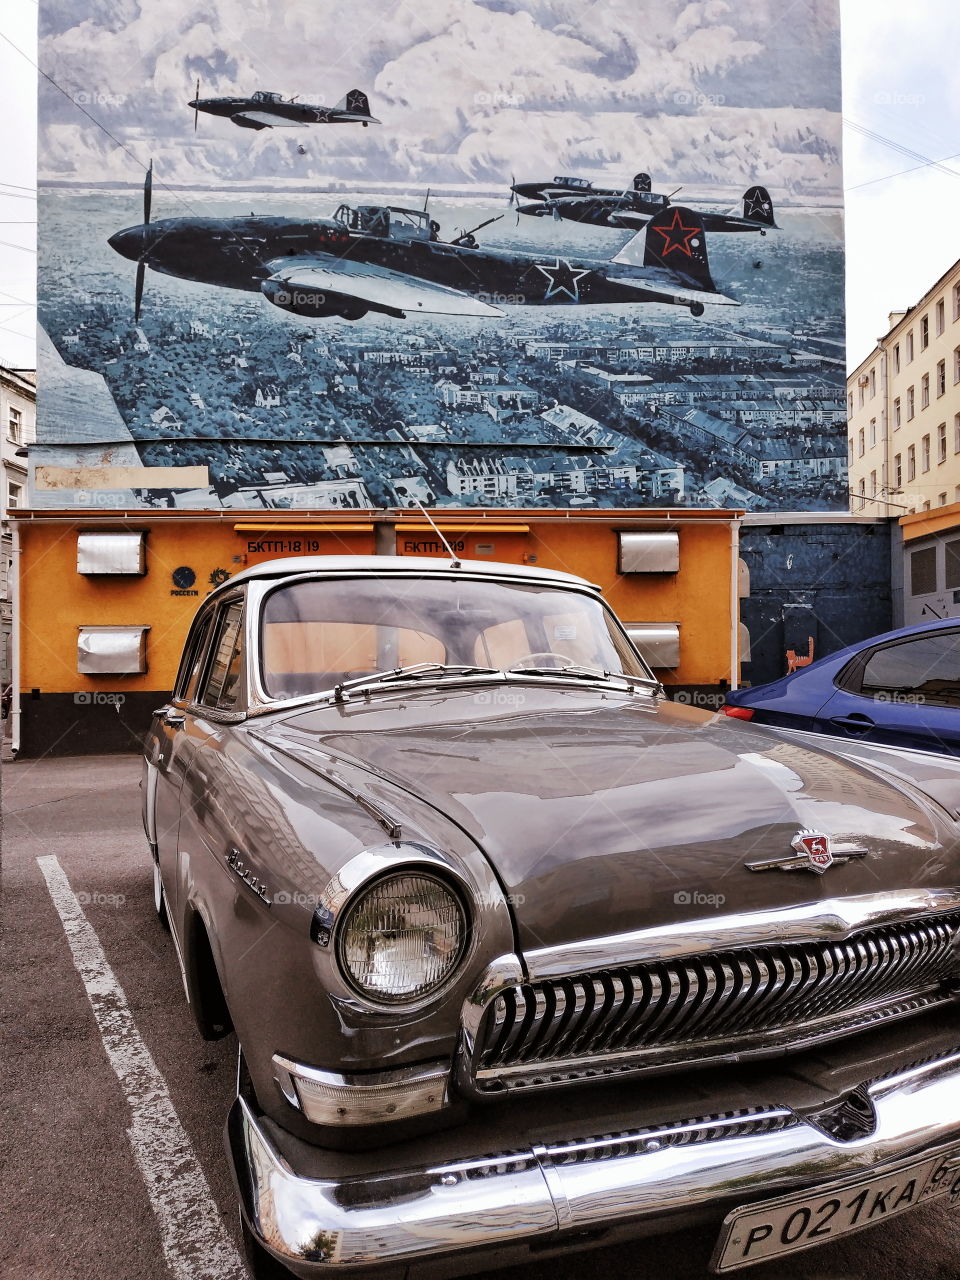 Graffiti and retro car